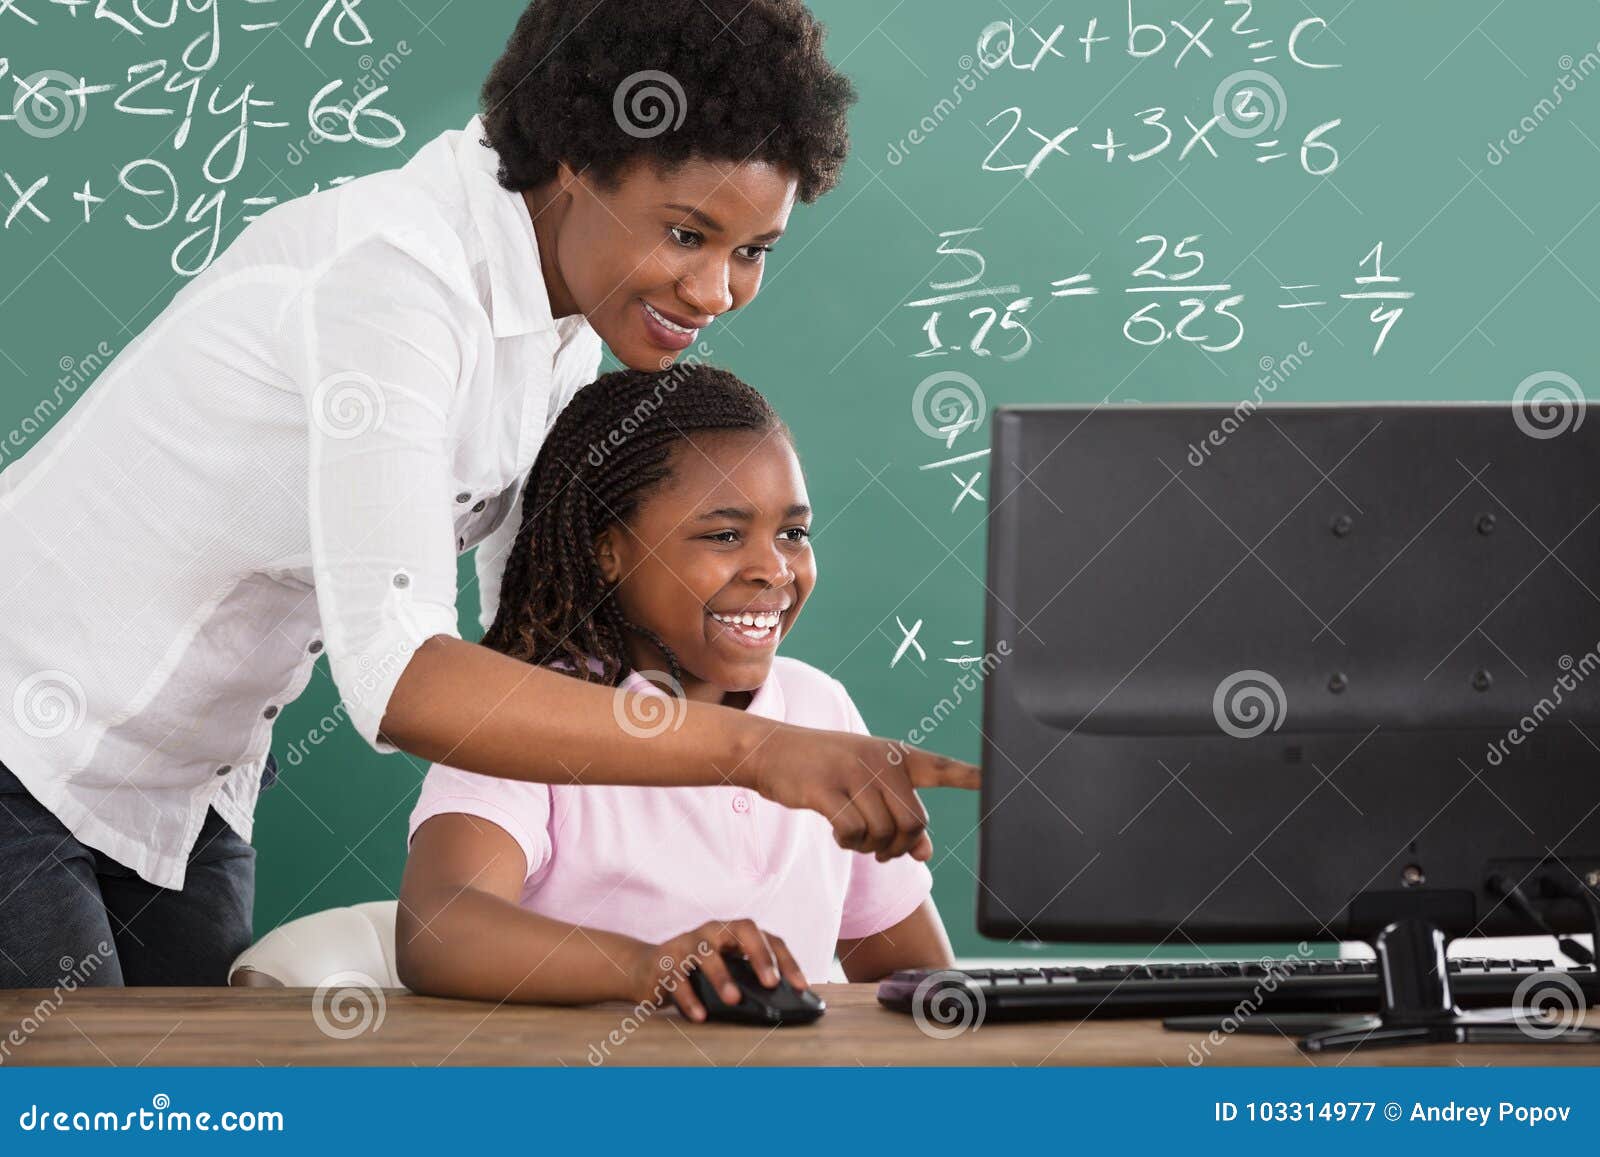 teacher teaching her student in class